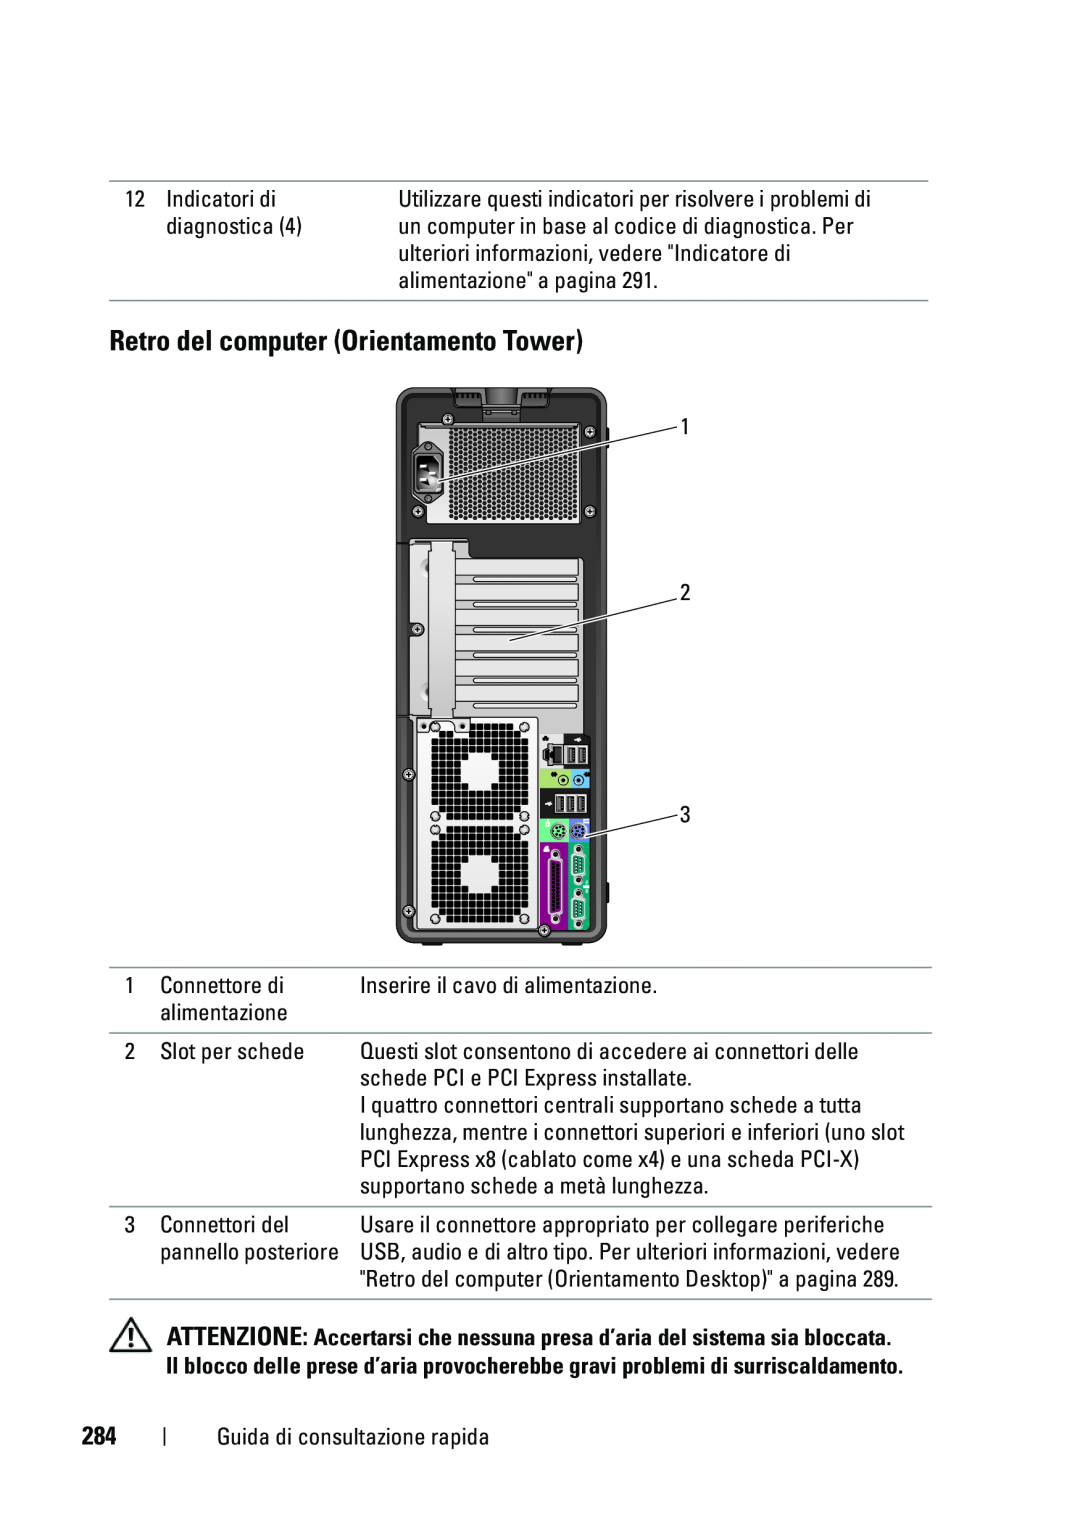 Dell T5400 manual Retro del computer Orientamento Tower 